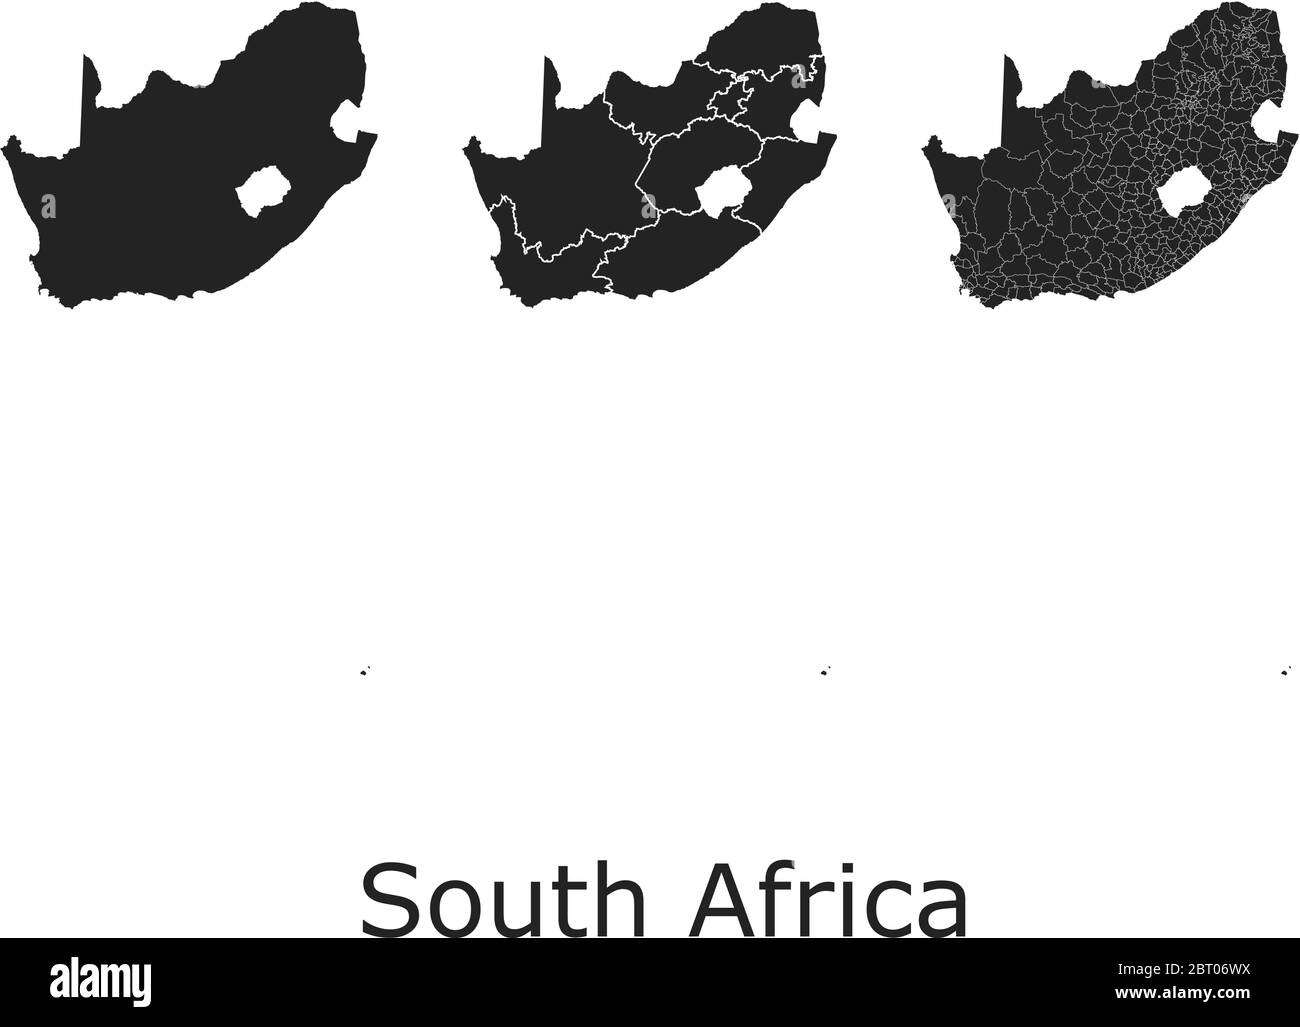 Cartes vectorielles de l'Afrique du Sud avec régions administratives, municipalités, départements, frontières Illustration de Vecteur